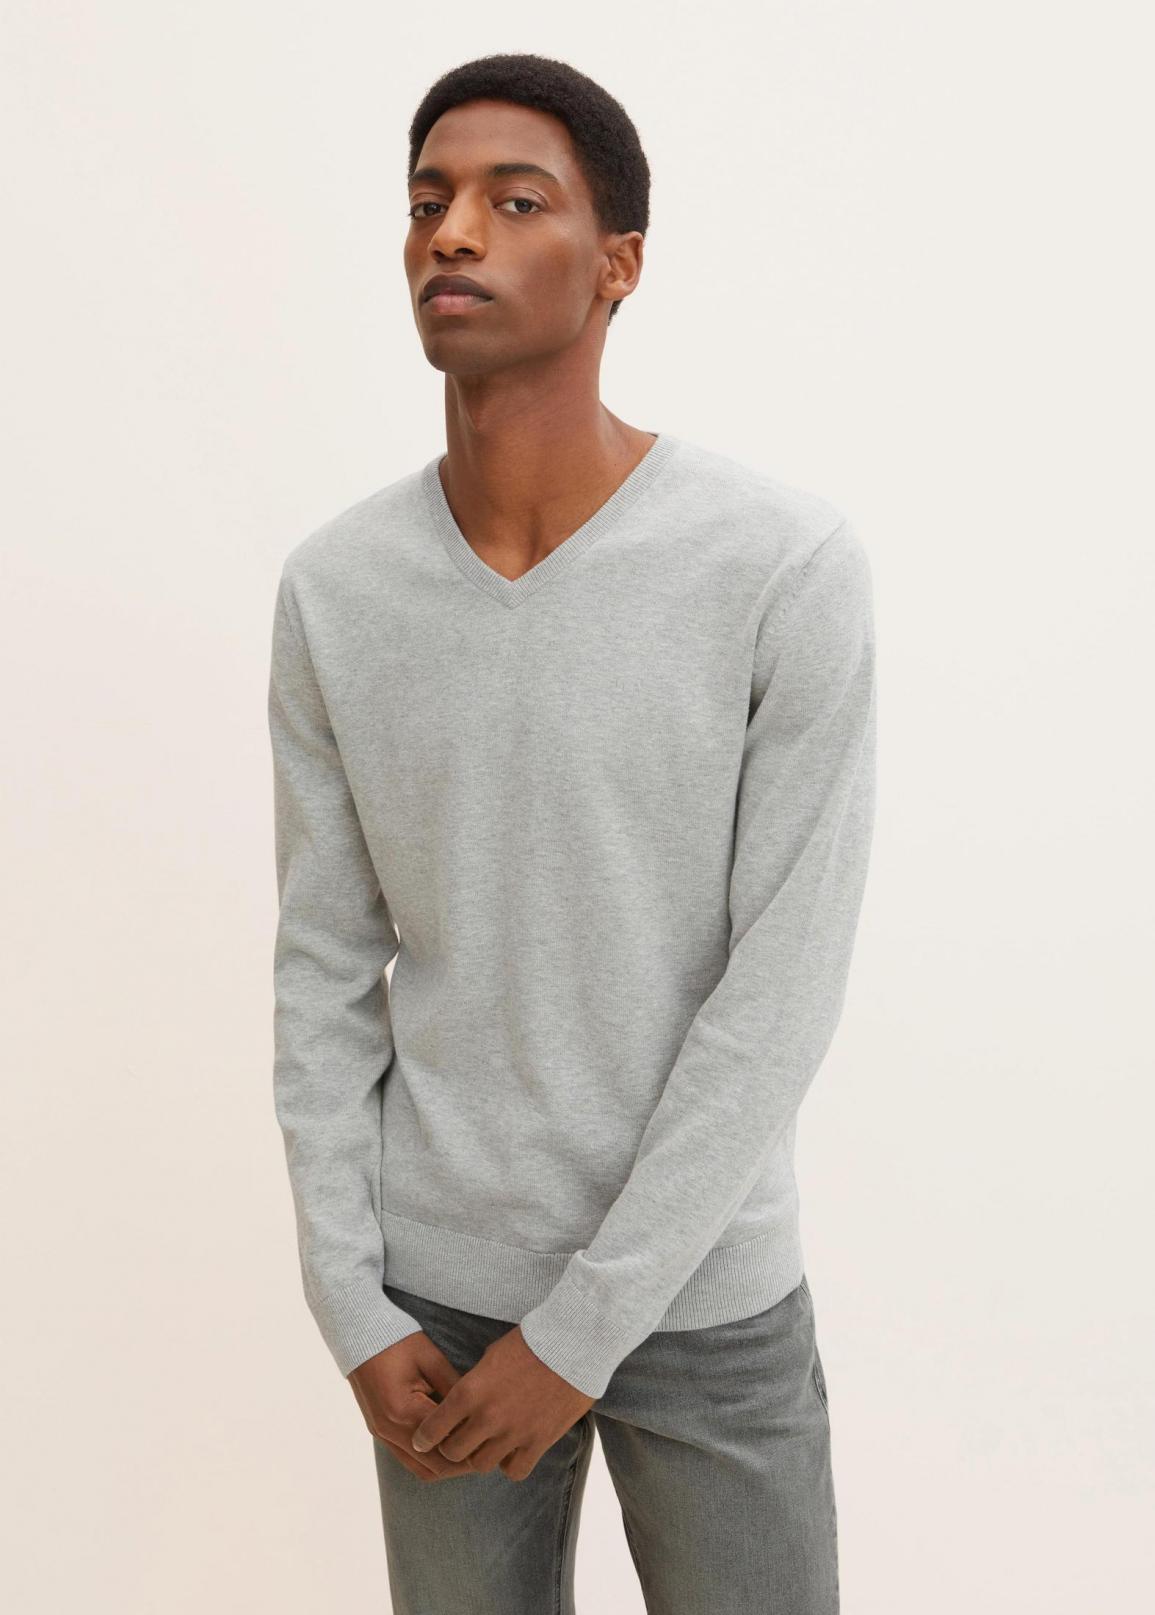 Tom Tailor® Simple Knitted Jumper - Light Soft Grey Melange